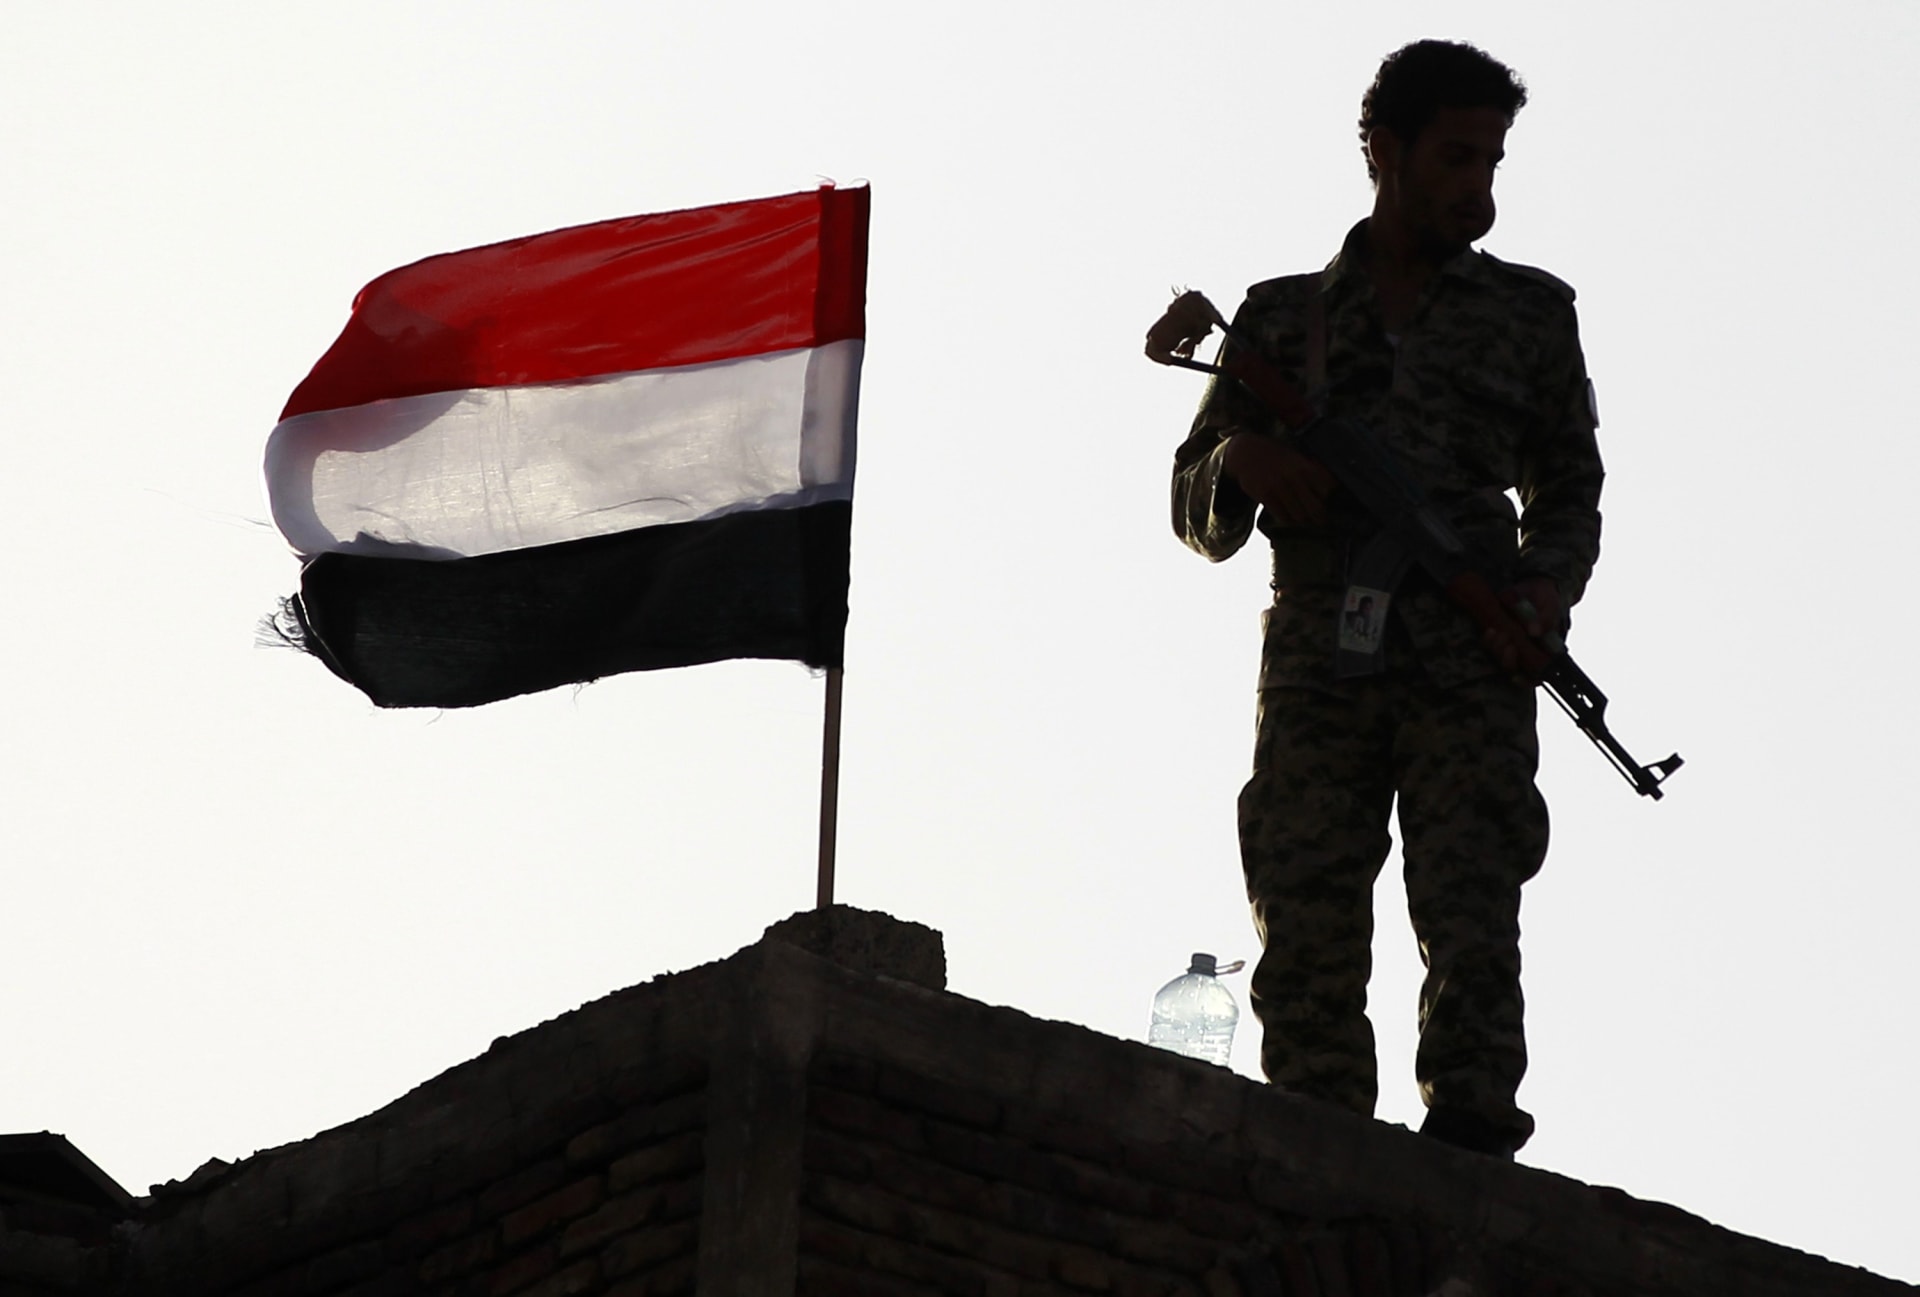 اليمن: قوات التحالف تستعد لـ"معركة تحرير الجوف" بغارات على الحوثيين